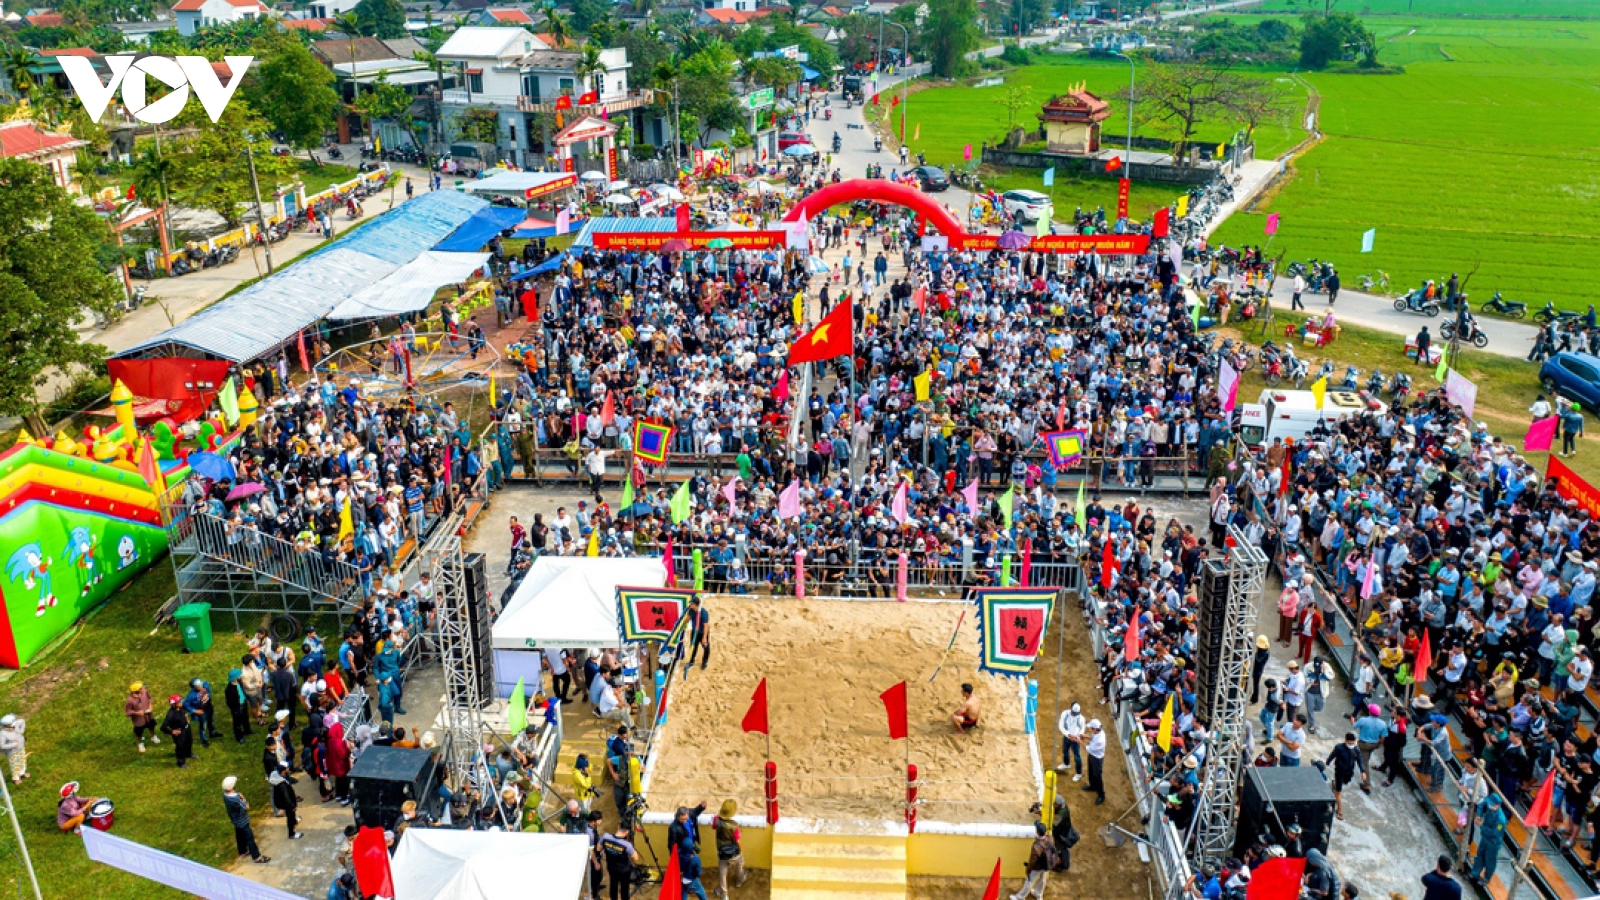 Du xuân tại lễ hội lâu đời bậc nhất cố đô Huế